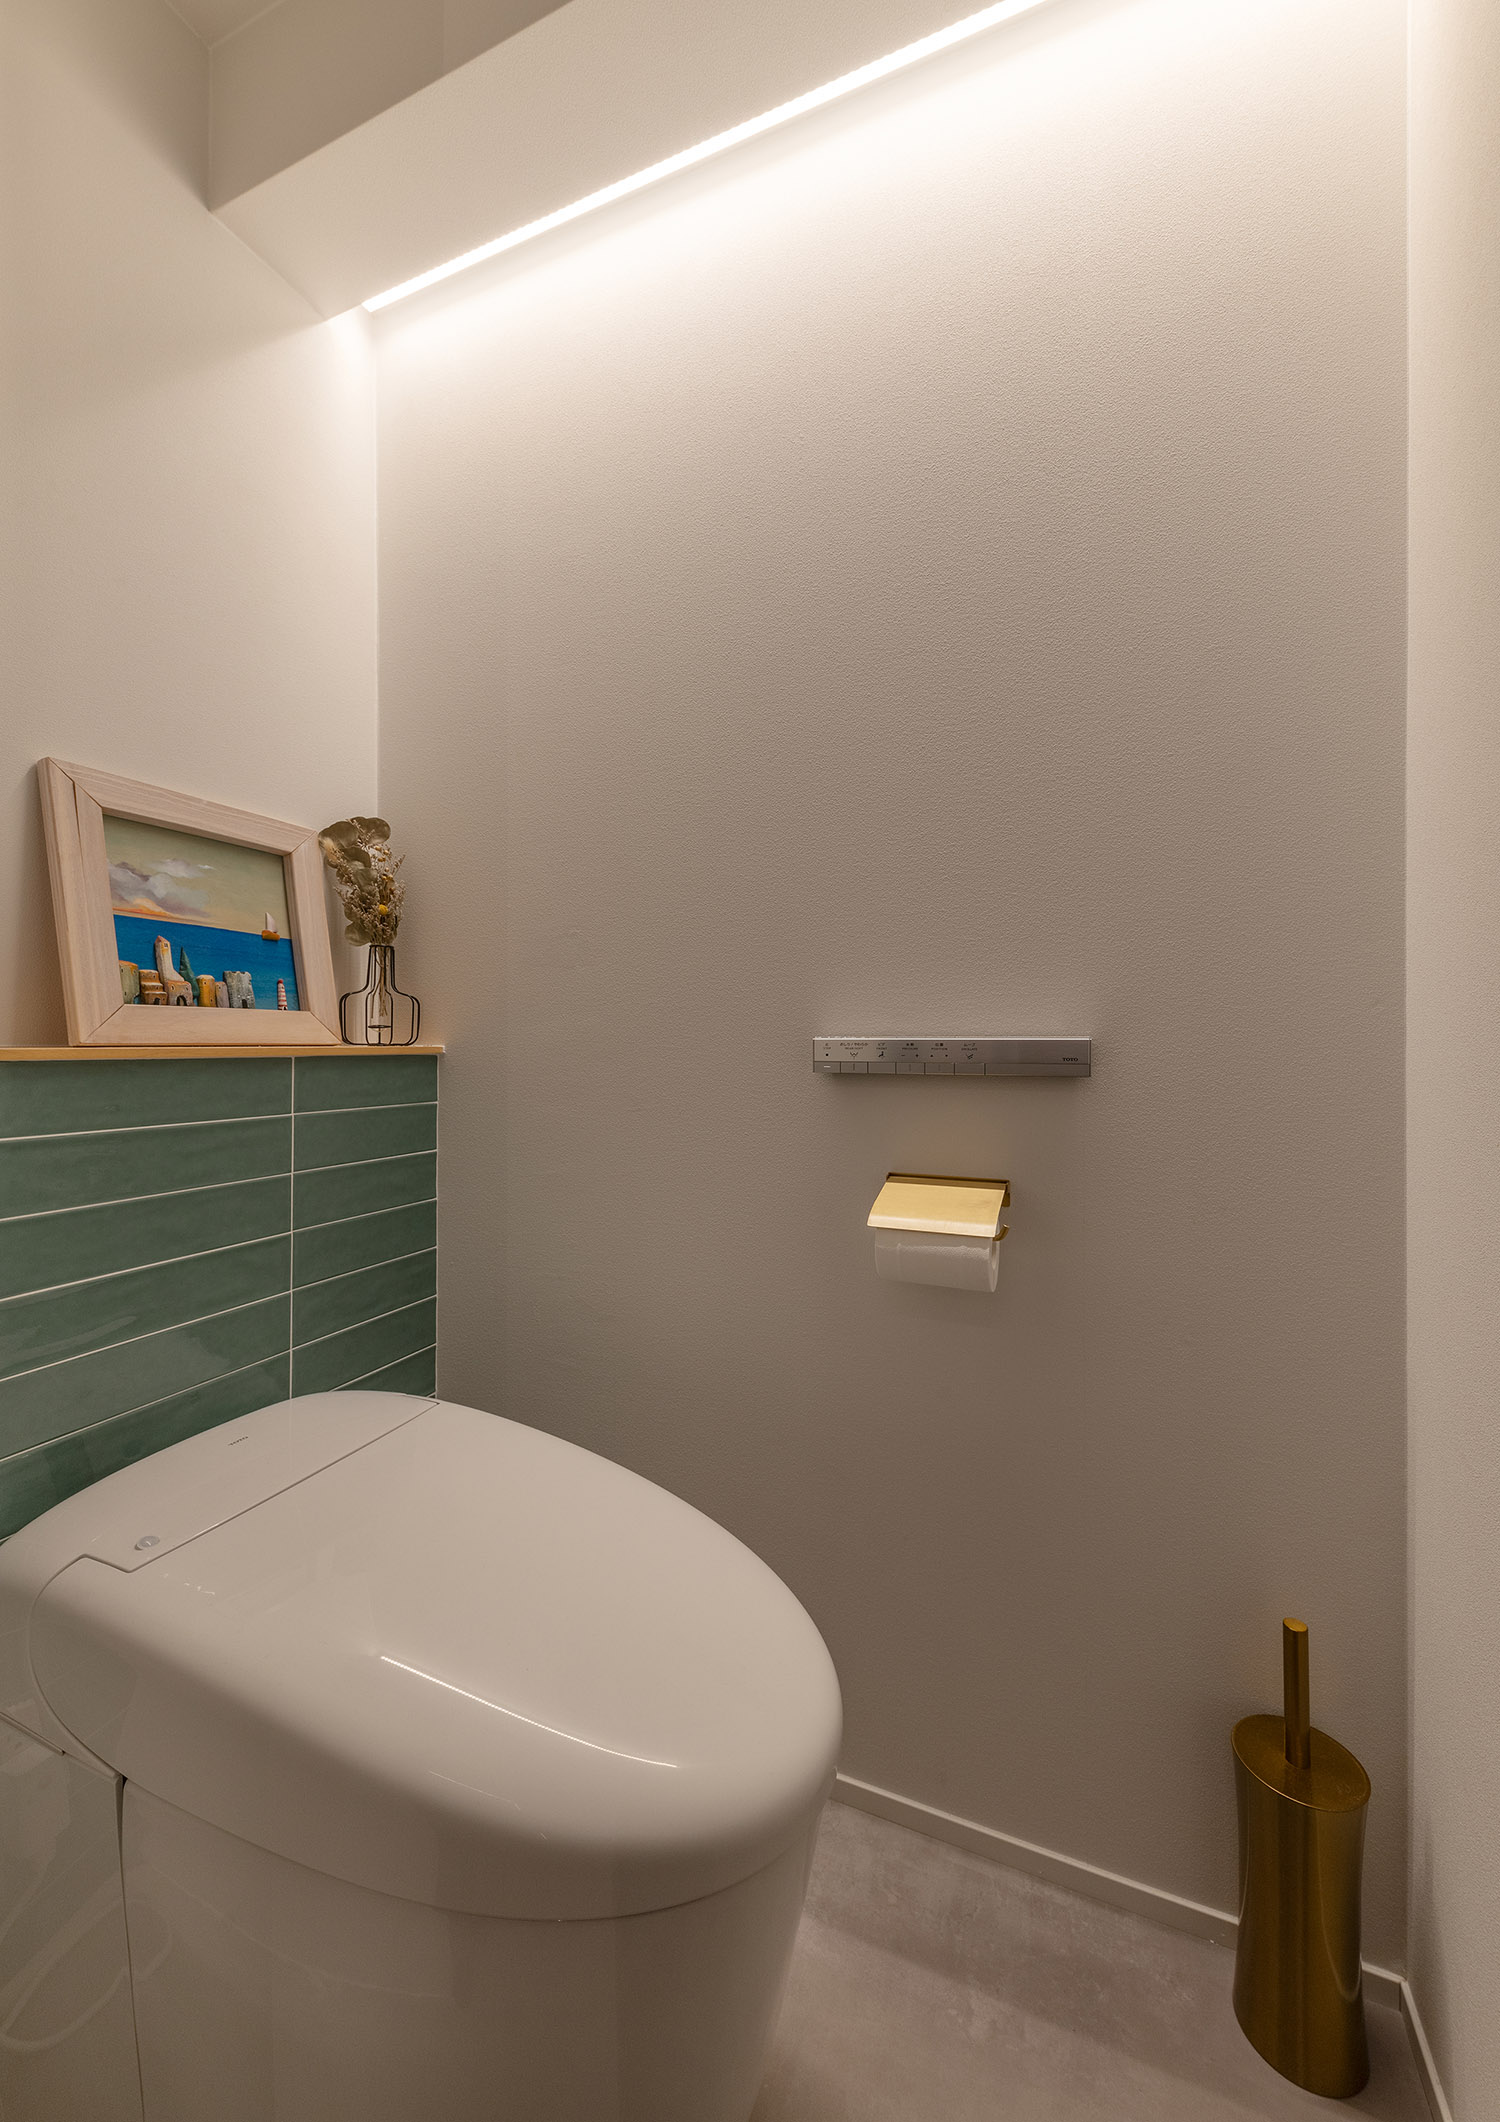 壁際に間接照明を取り付けたシンプルでおしゃれなトイレ・デザイン住宅